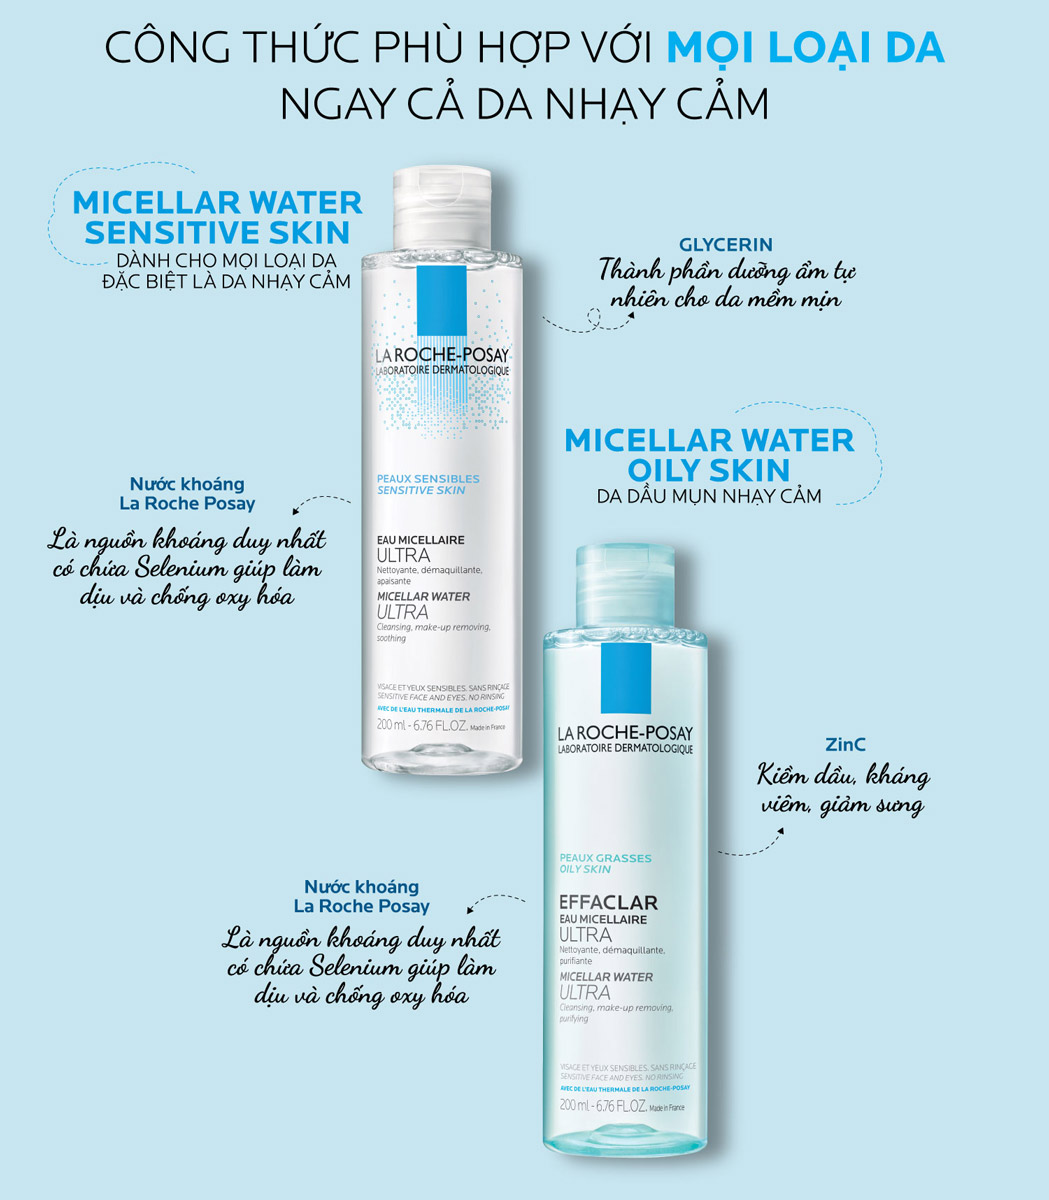 Nước Tẩy Trang La Roche-Posay Effaclar Micellar Water Ultra Oily Skin phù hợp với da dầu, nhạy cảm